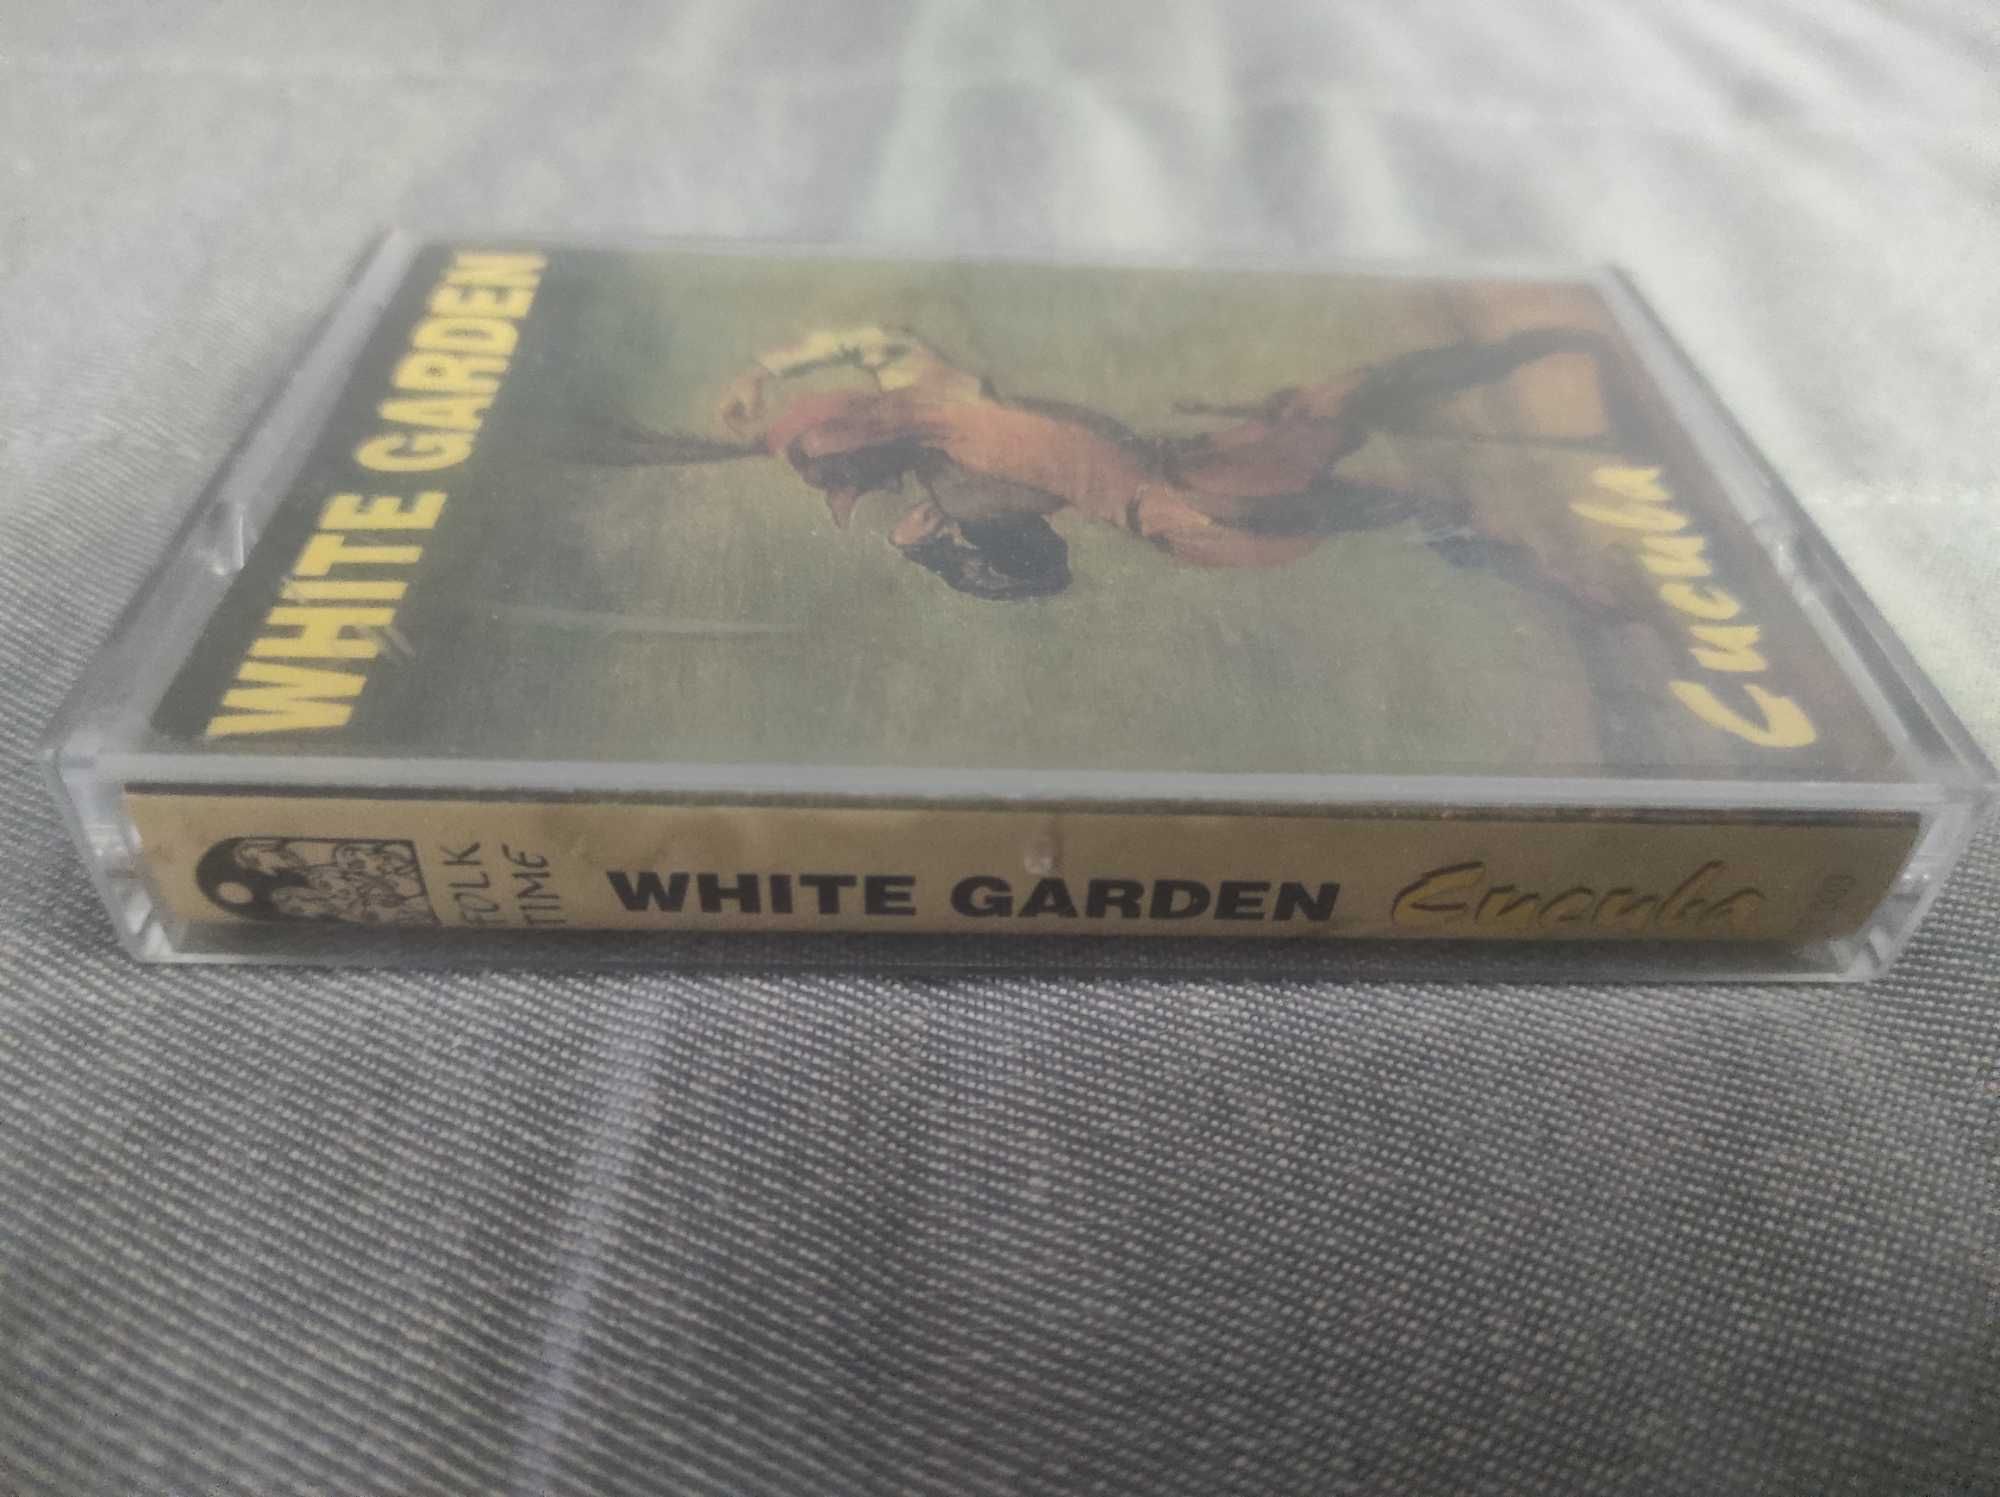 White Garden Cucuba 1998 kaseta